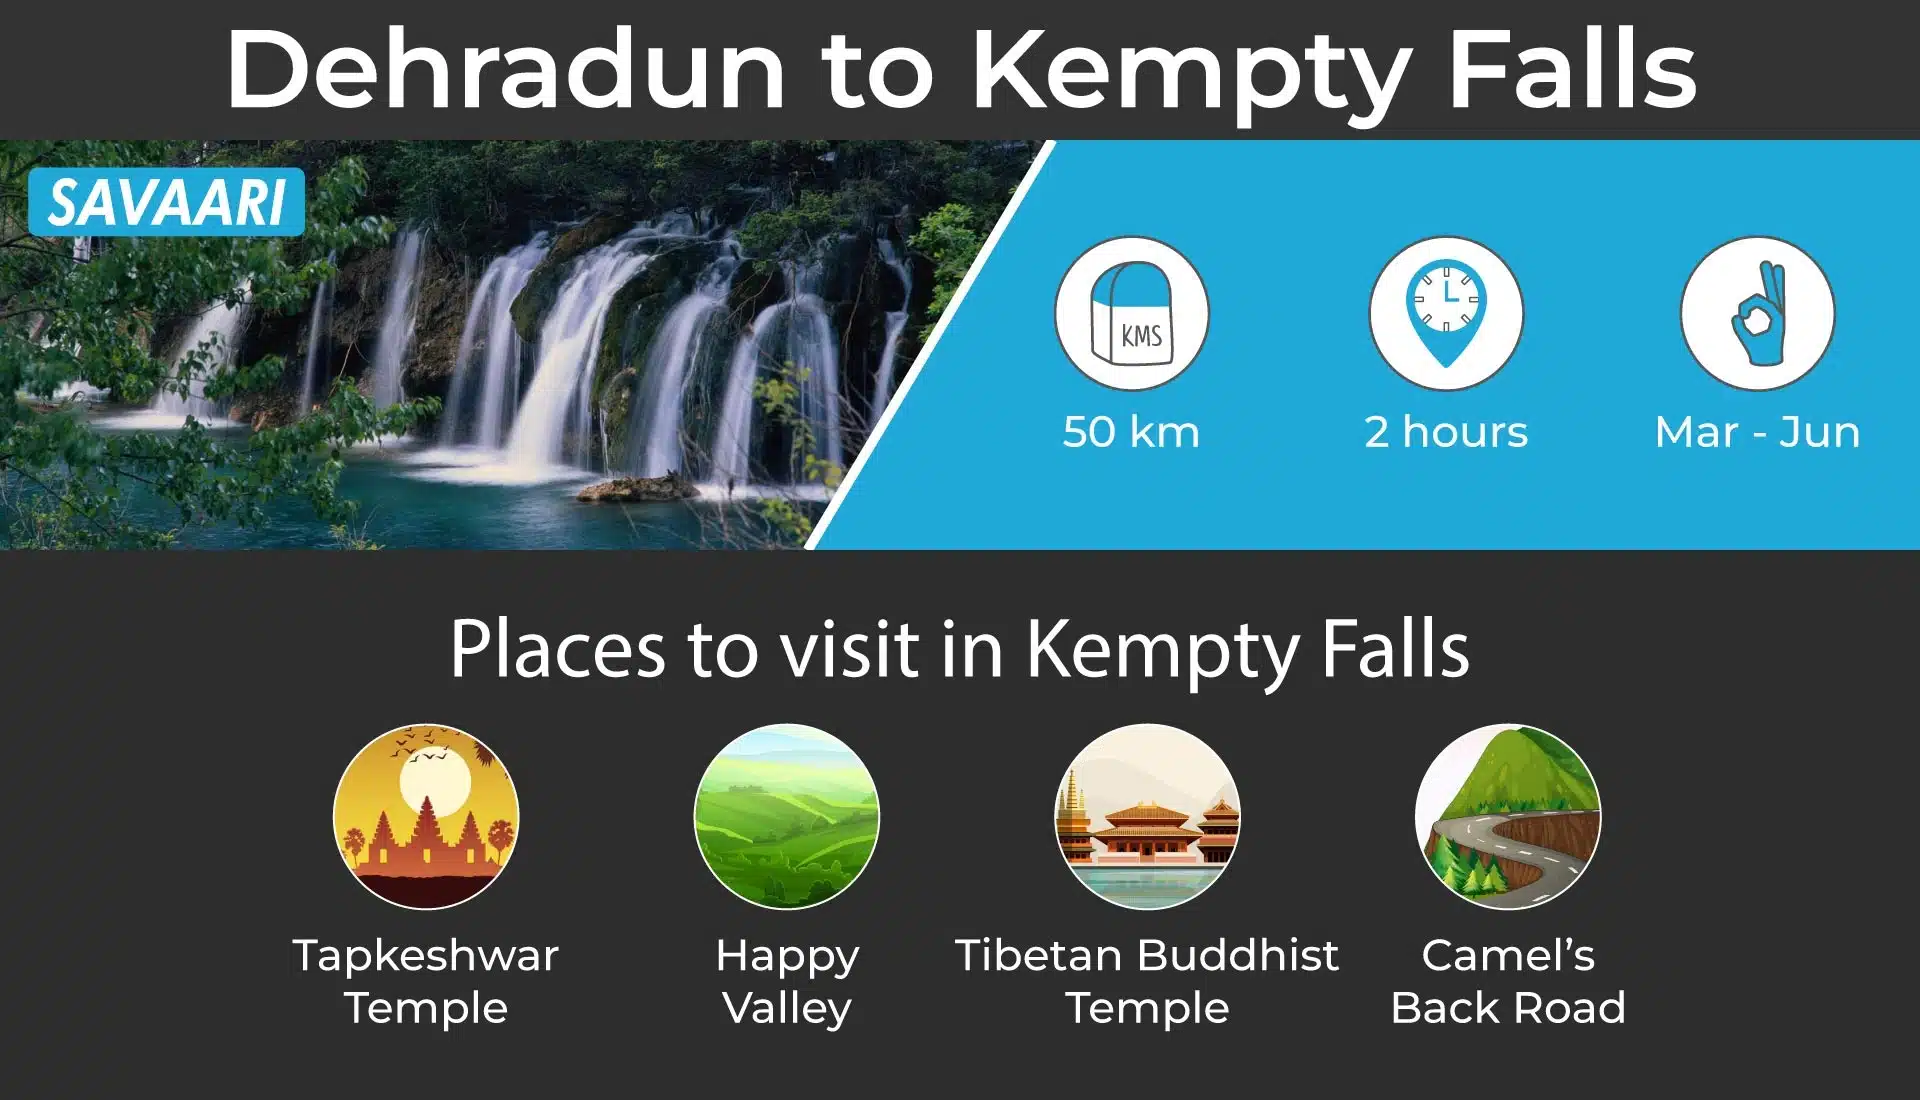 Dehradun to Kempty falls